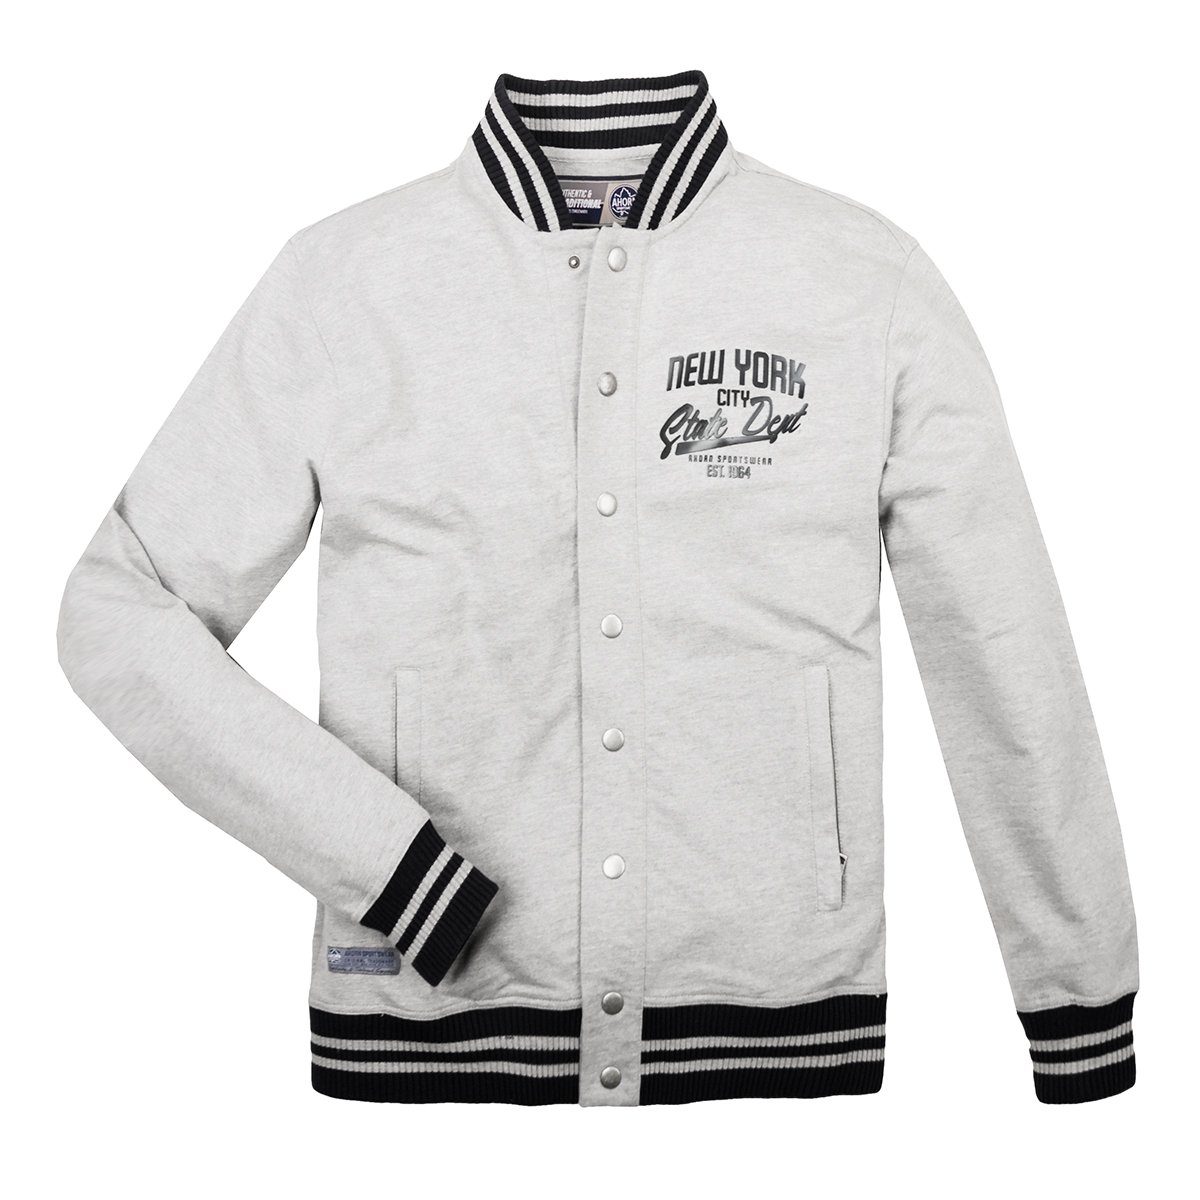 AHORN SPORTSWEAR Sweatjacke »Übergrößen College Jacke hellgrau melange  Ahorn Sportswear« online kaufen | OTTO